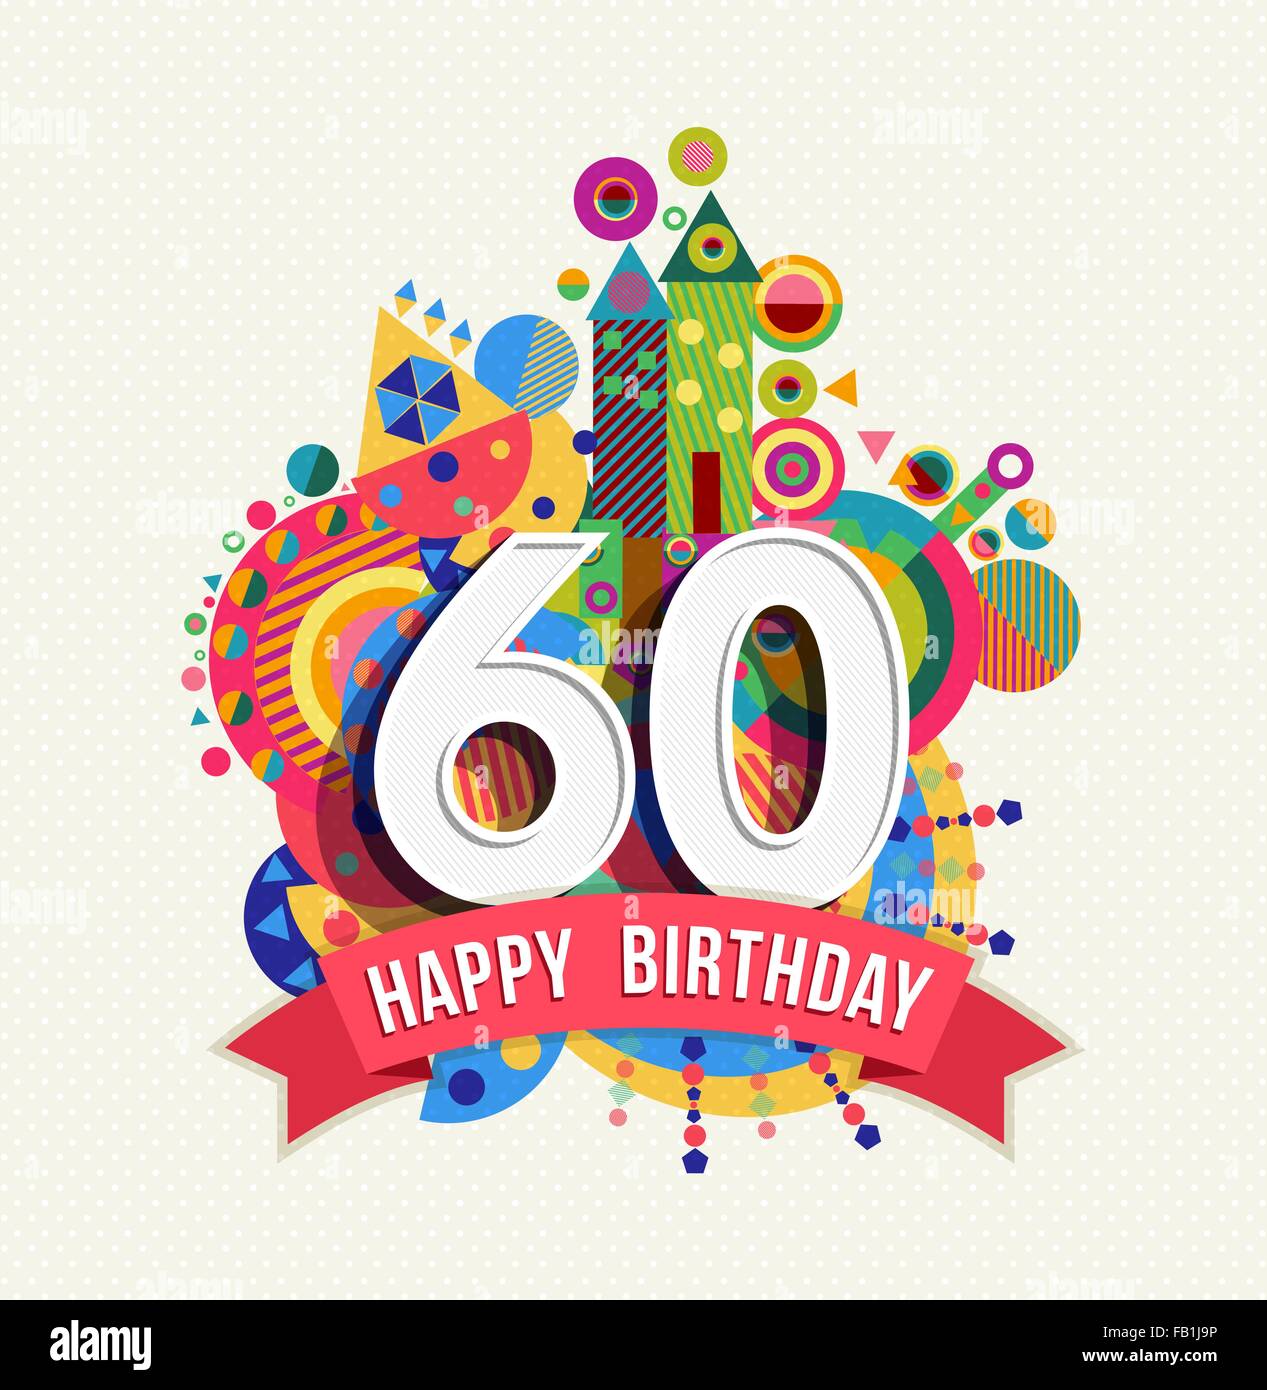 LEVOO-Fondo de fotografía de 60 cumpleaños, globos, puntos, rosa